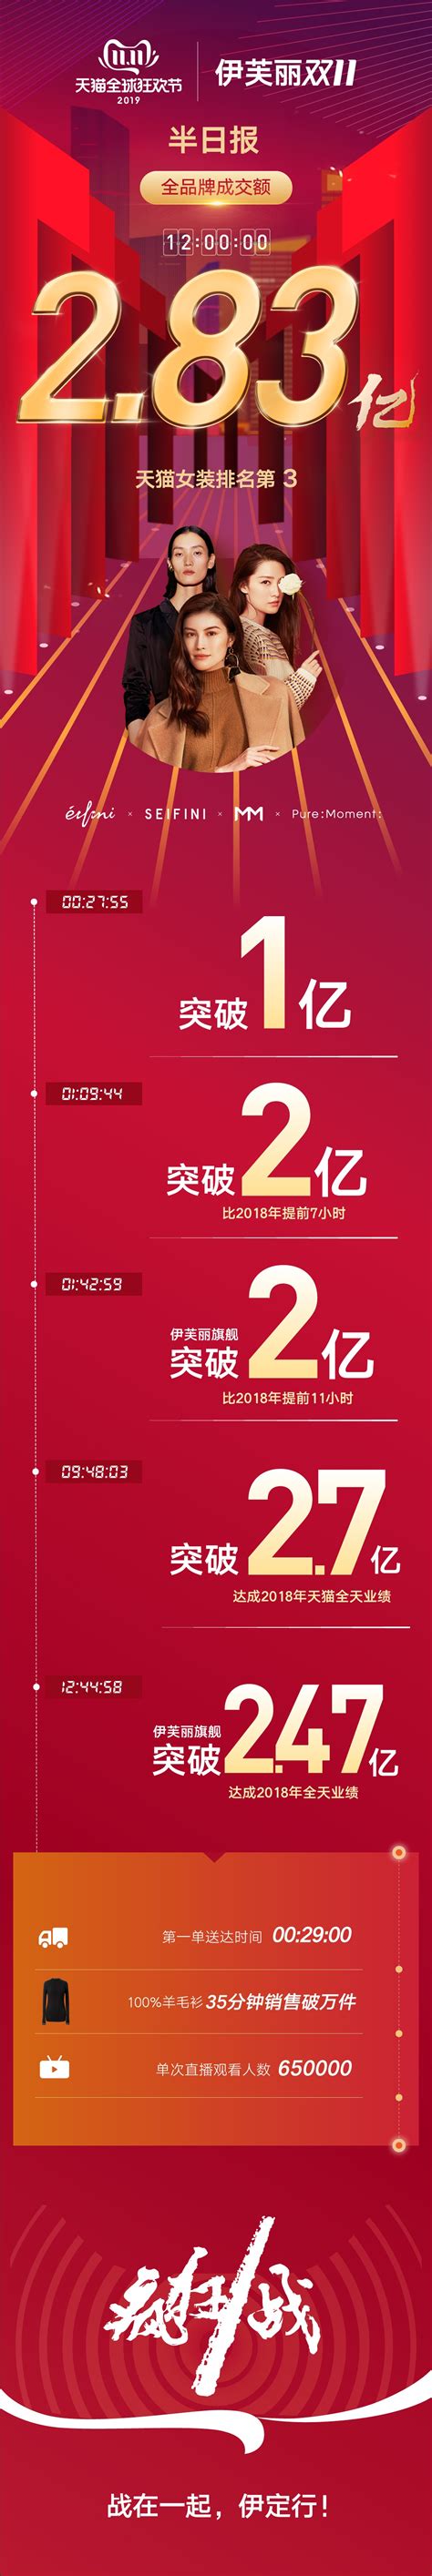 森马2019年双11销售额突破13.8亿再创新纪录_联商网